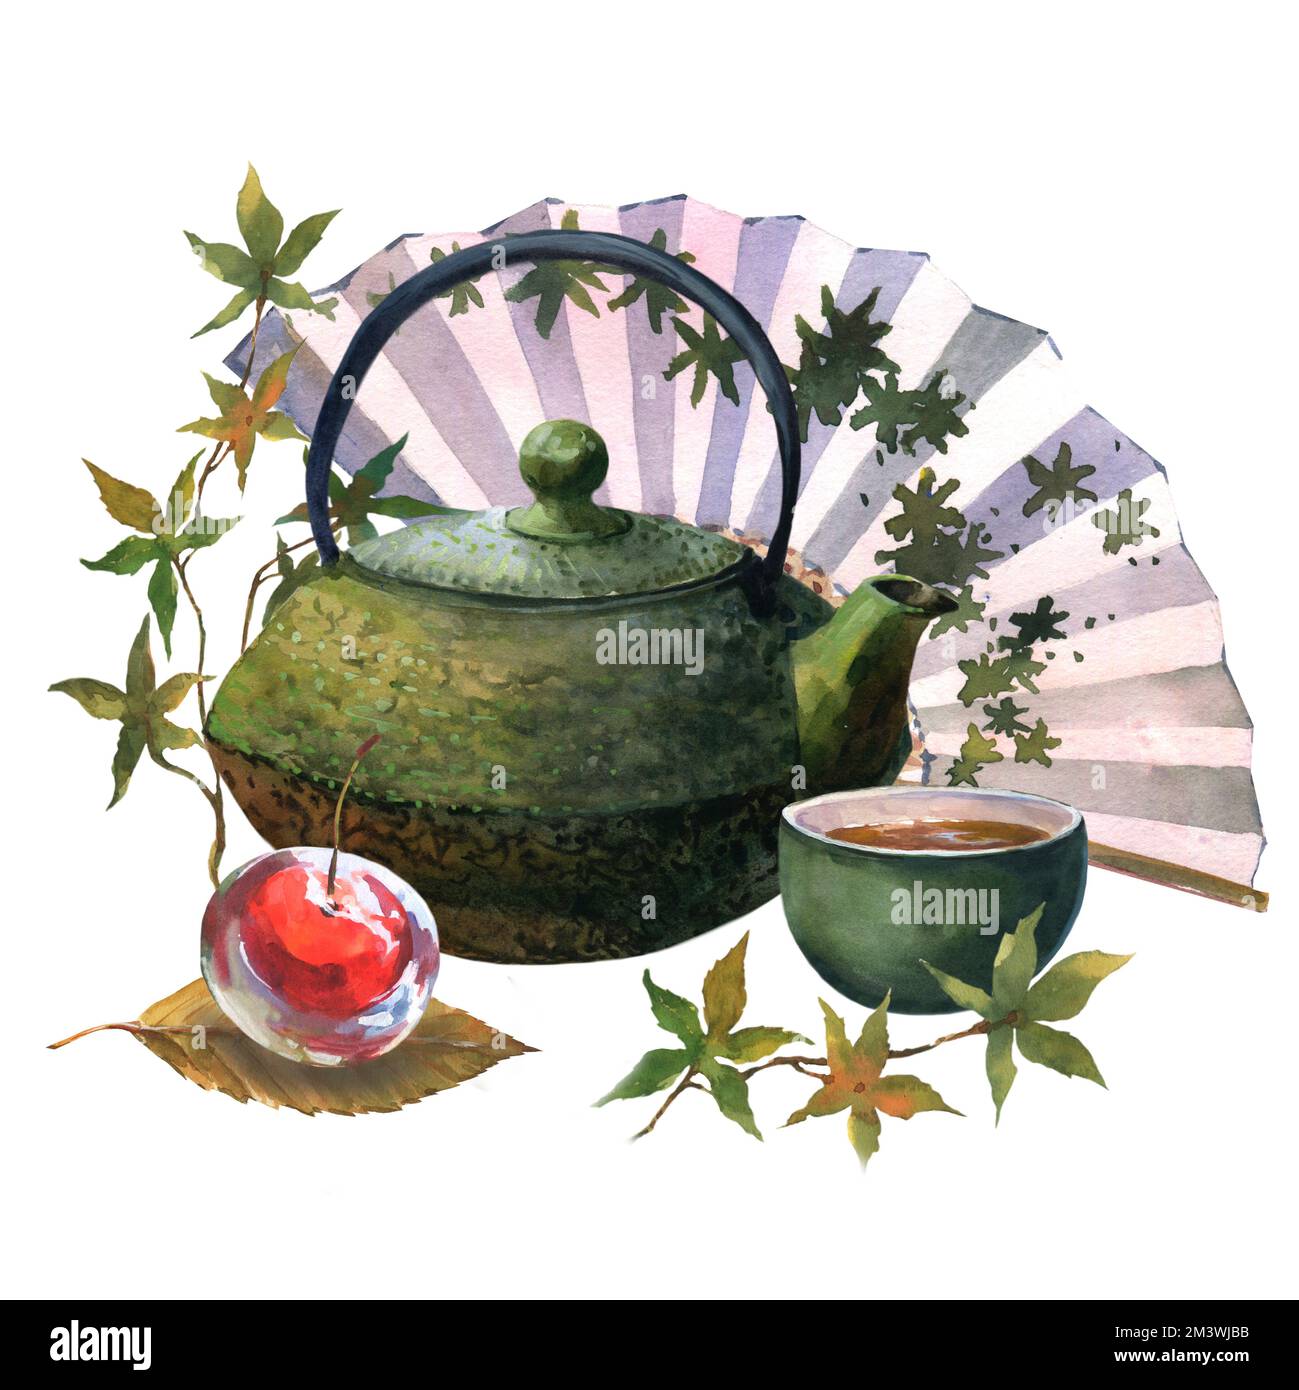 Aquarell-asiatischer Tee mit grüner teekanne, grüner Tasse Tee, Gelee-Kirsche auf Blättern von Sakura und japanischem Fan, isoliert auf weißem Hintergrund. Essen d Stockfoto